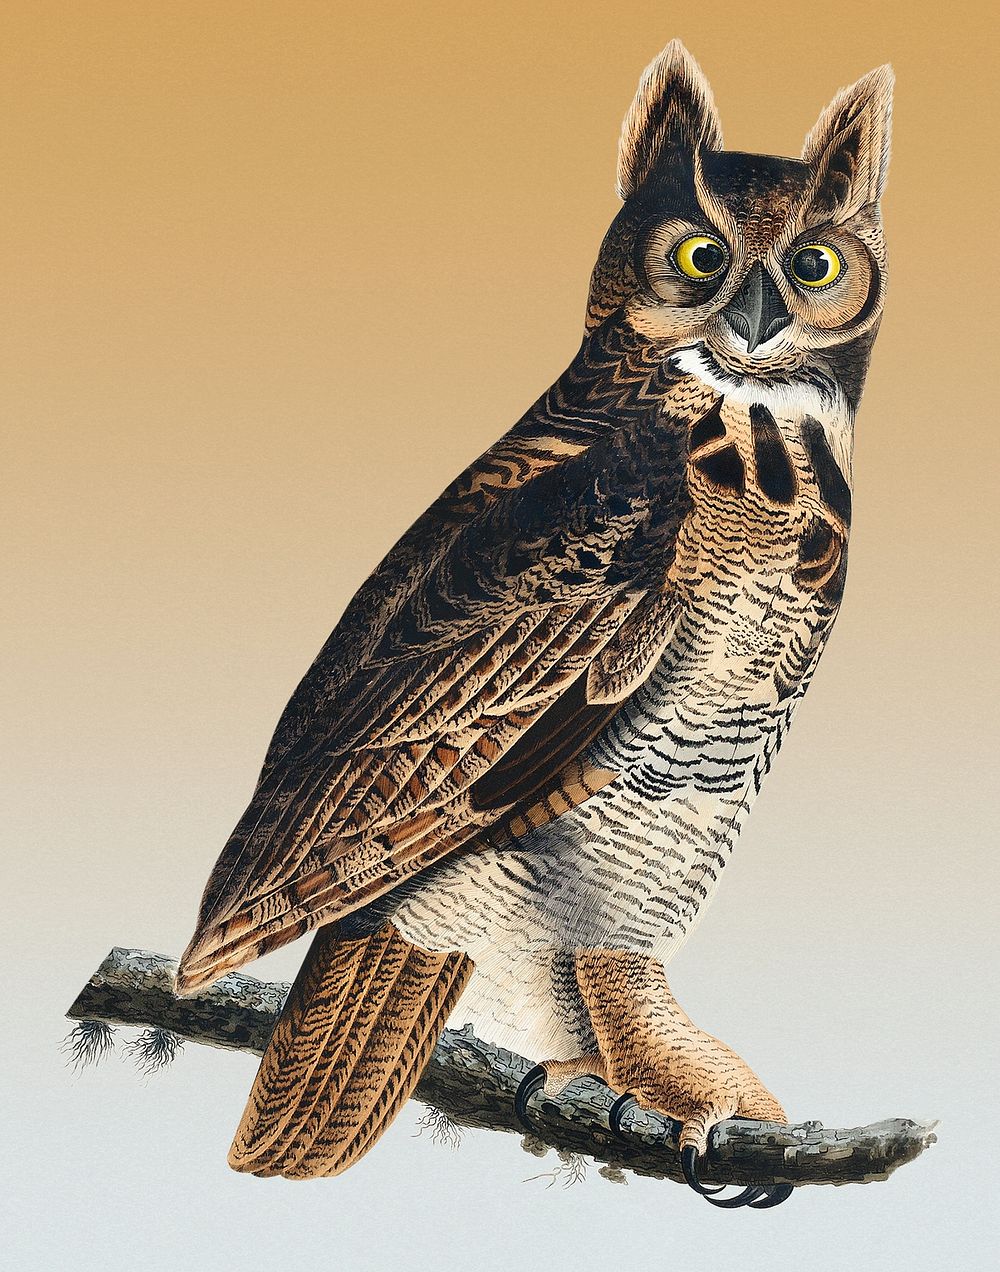 Vintage Illustration of Great Horned Owl.